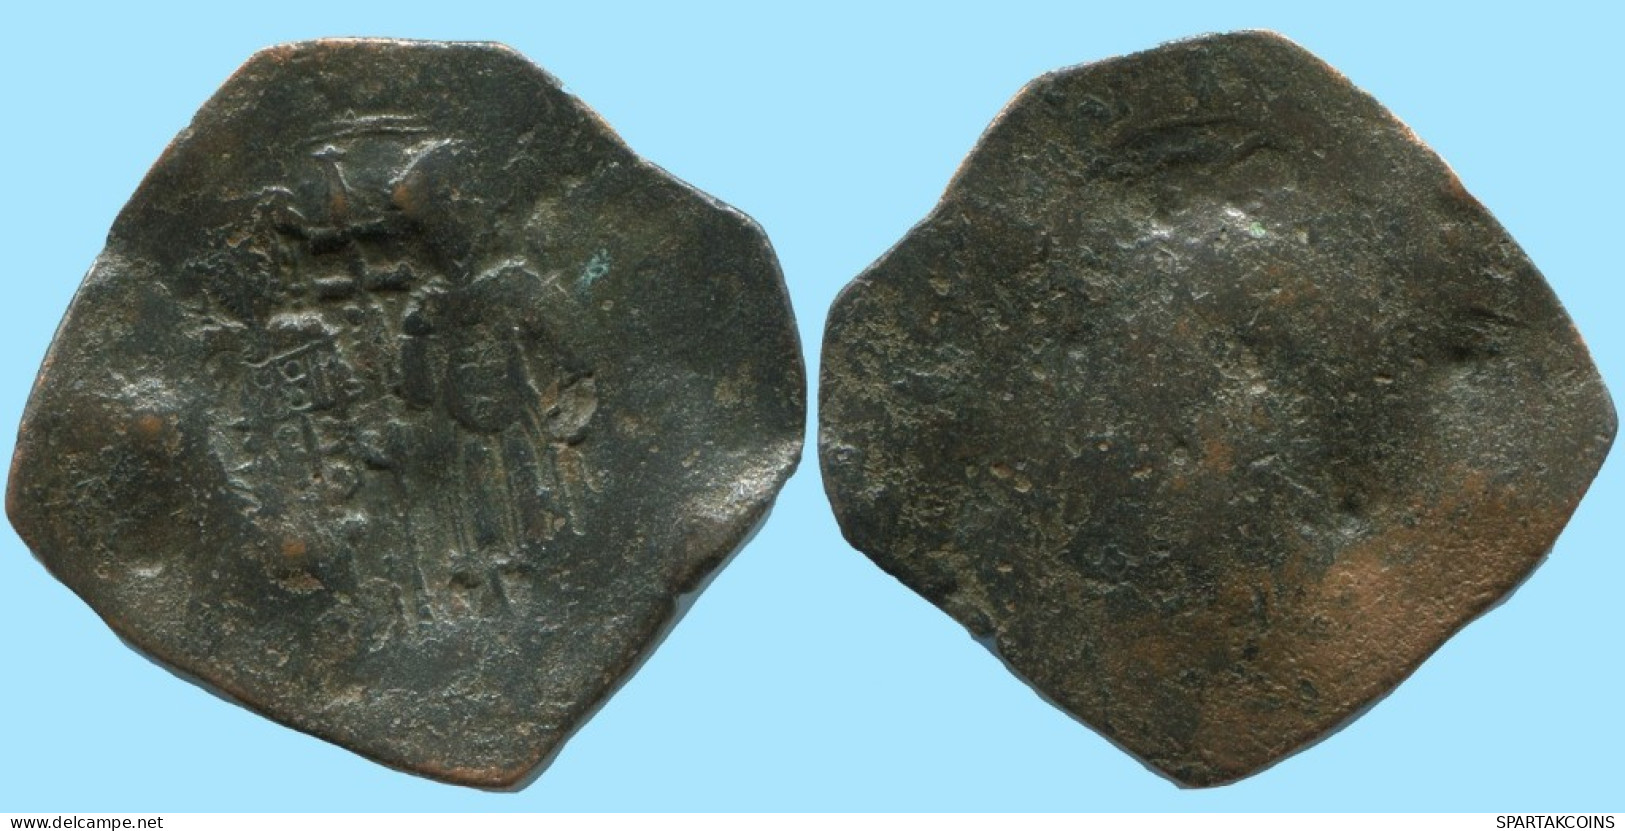 ALEXIOS III ANGELOS ASPRON TRACHY BILLON BYZANTINE Moneda 2.7g/27mm #AB455.9.E.A - Byzantine